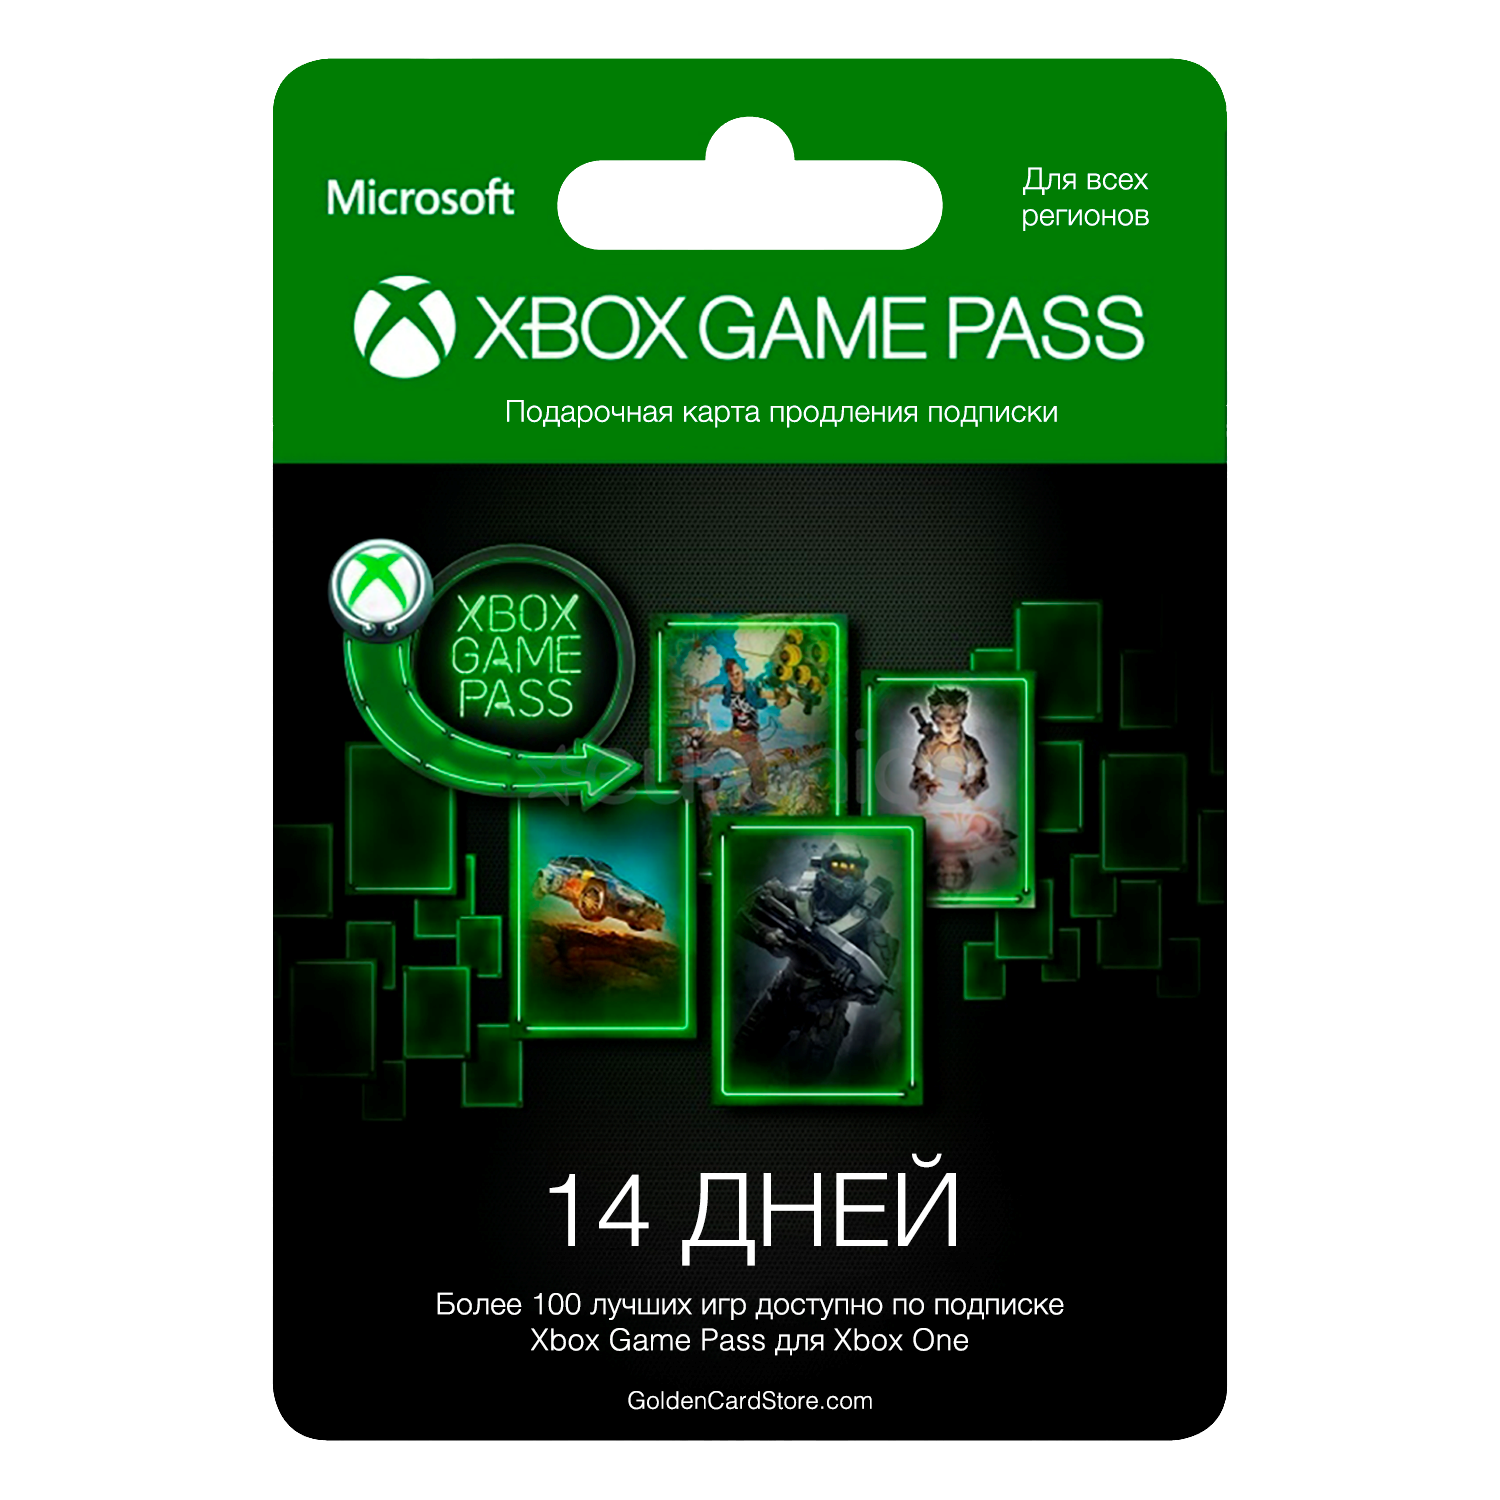 Подписка на xbox series x. Подписка Xbox game Pass. Карта для Xbox game Pass. Microsoft Xbox подписка. Карточка гейм пасс.